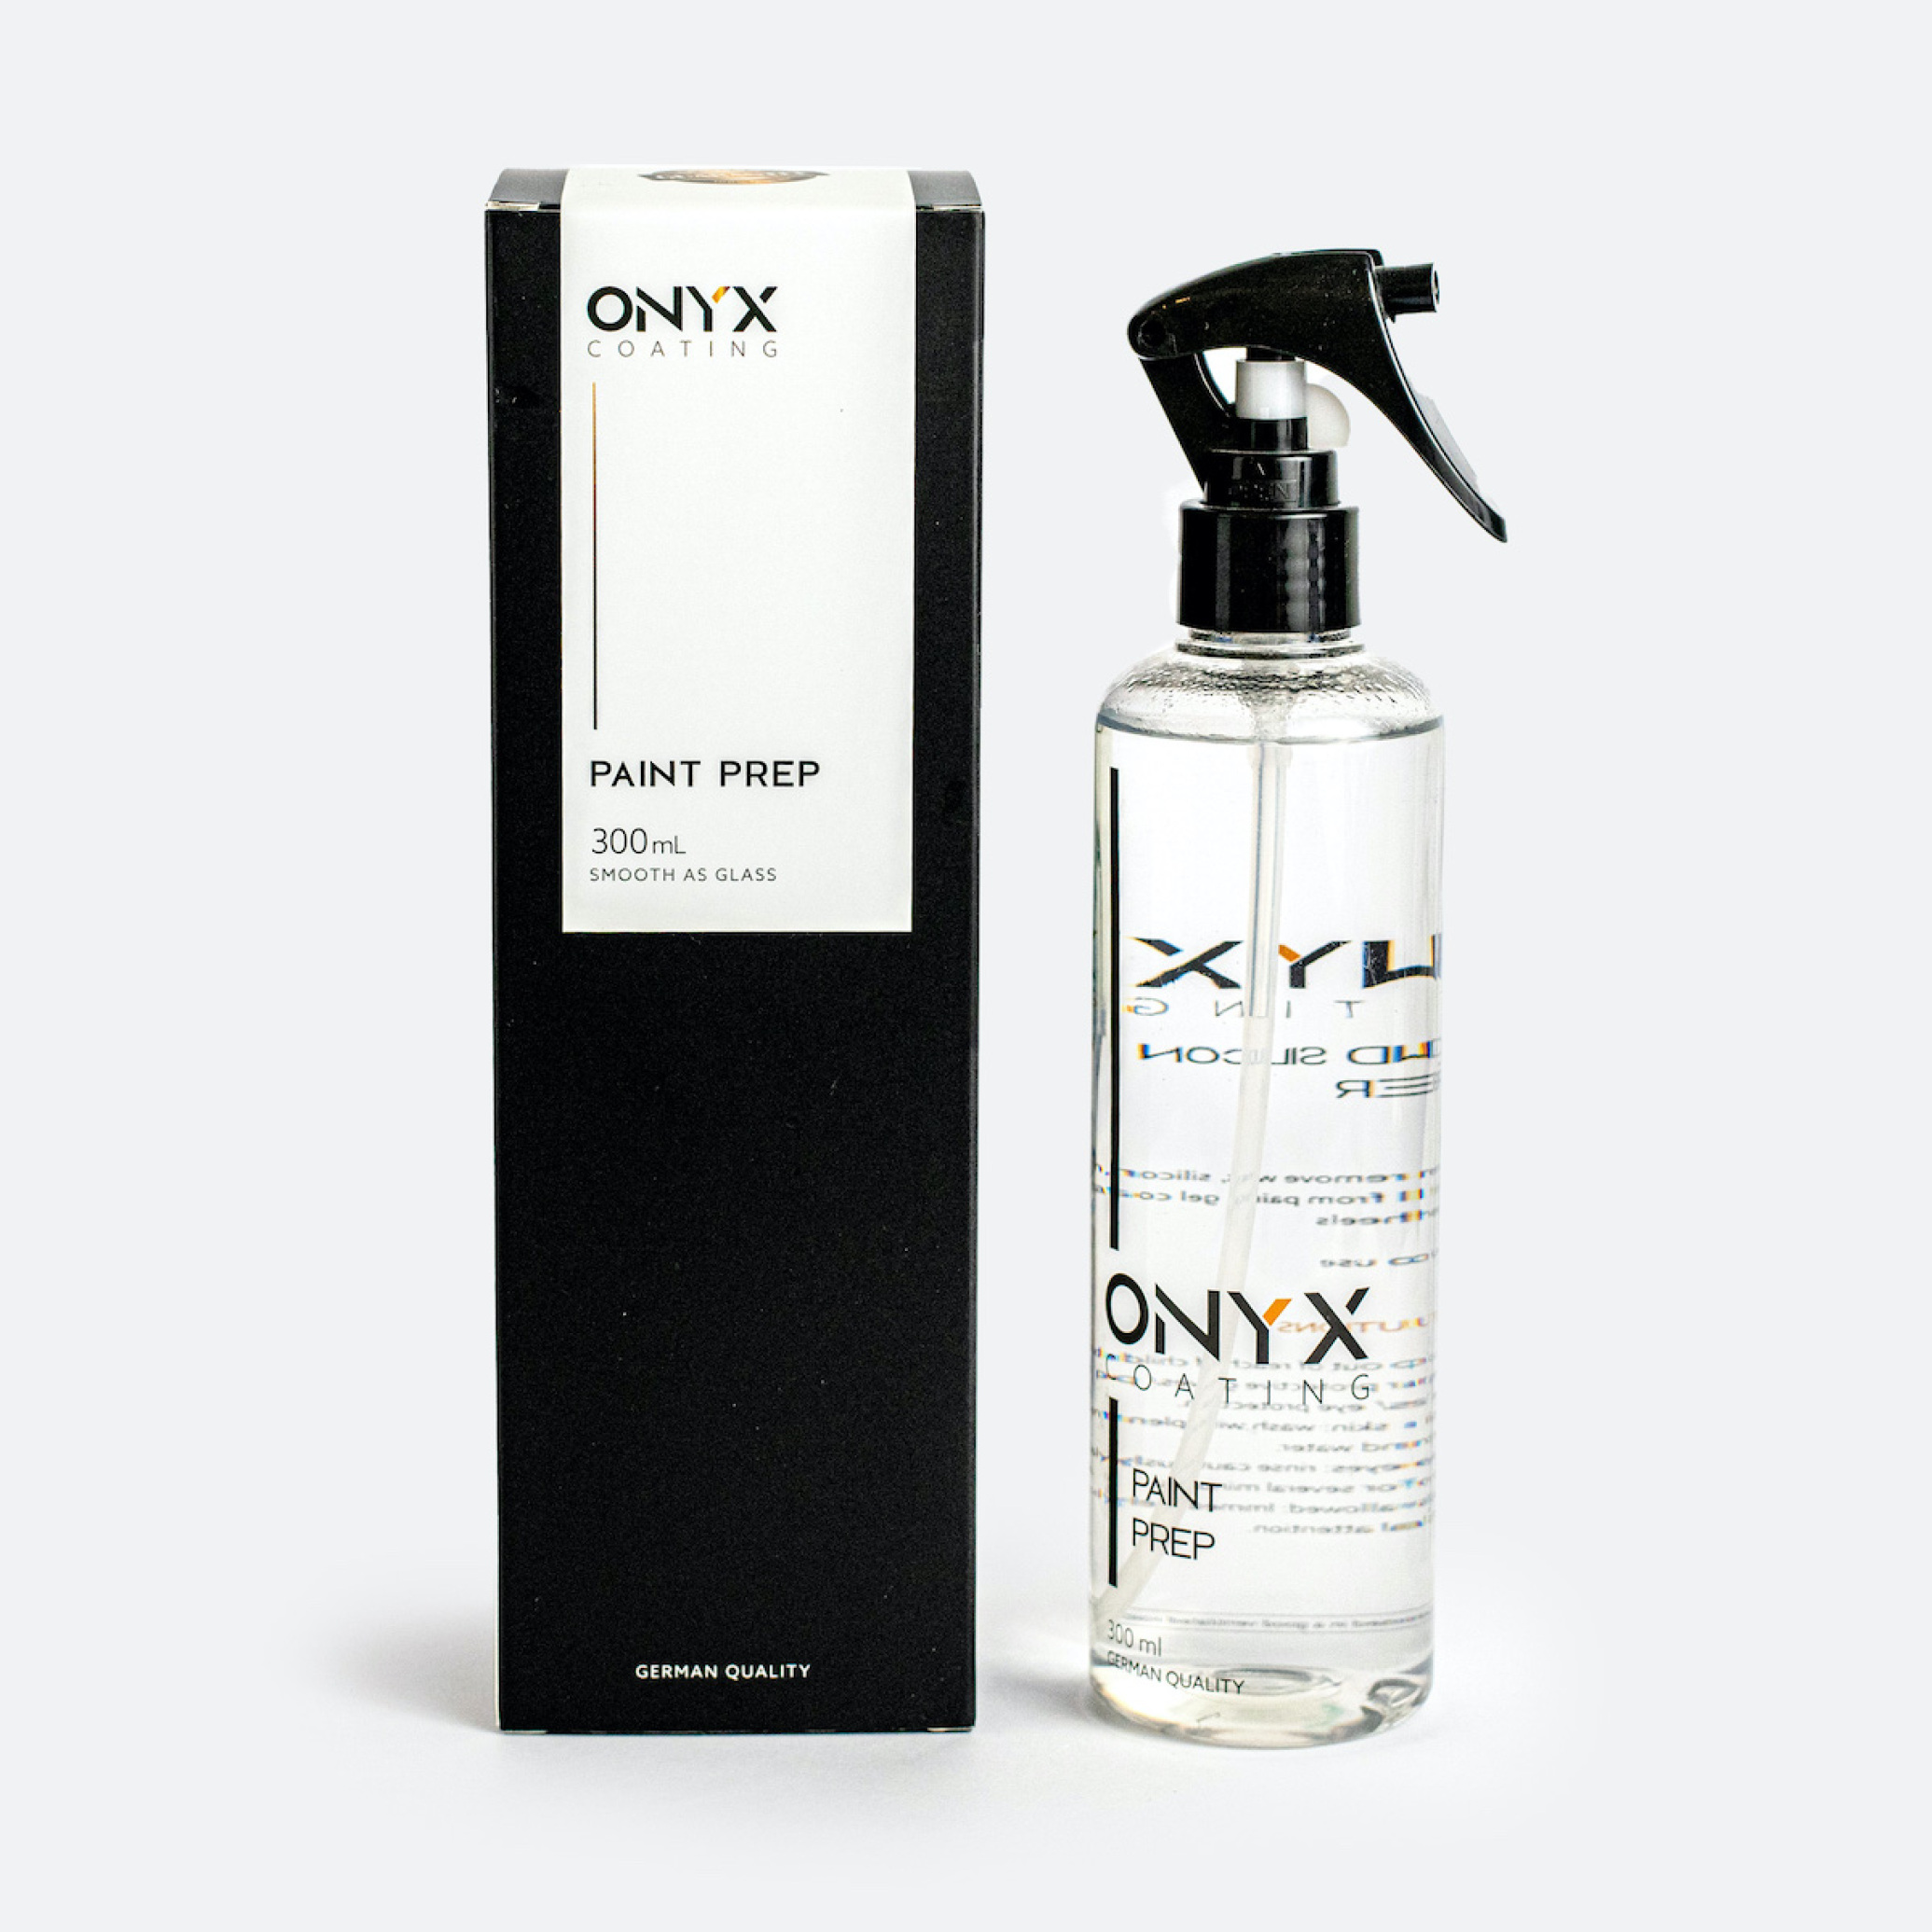  آماده ساز رنگ اونیکس Onyx Paint Prep 